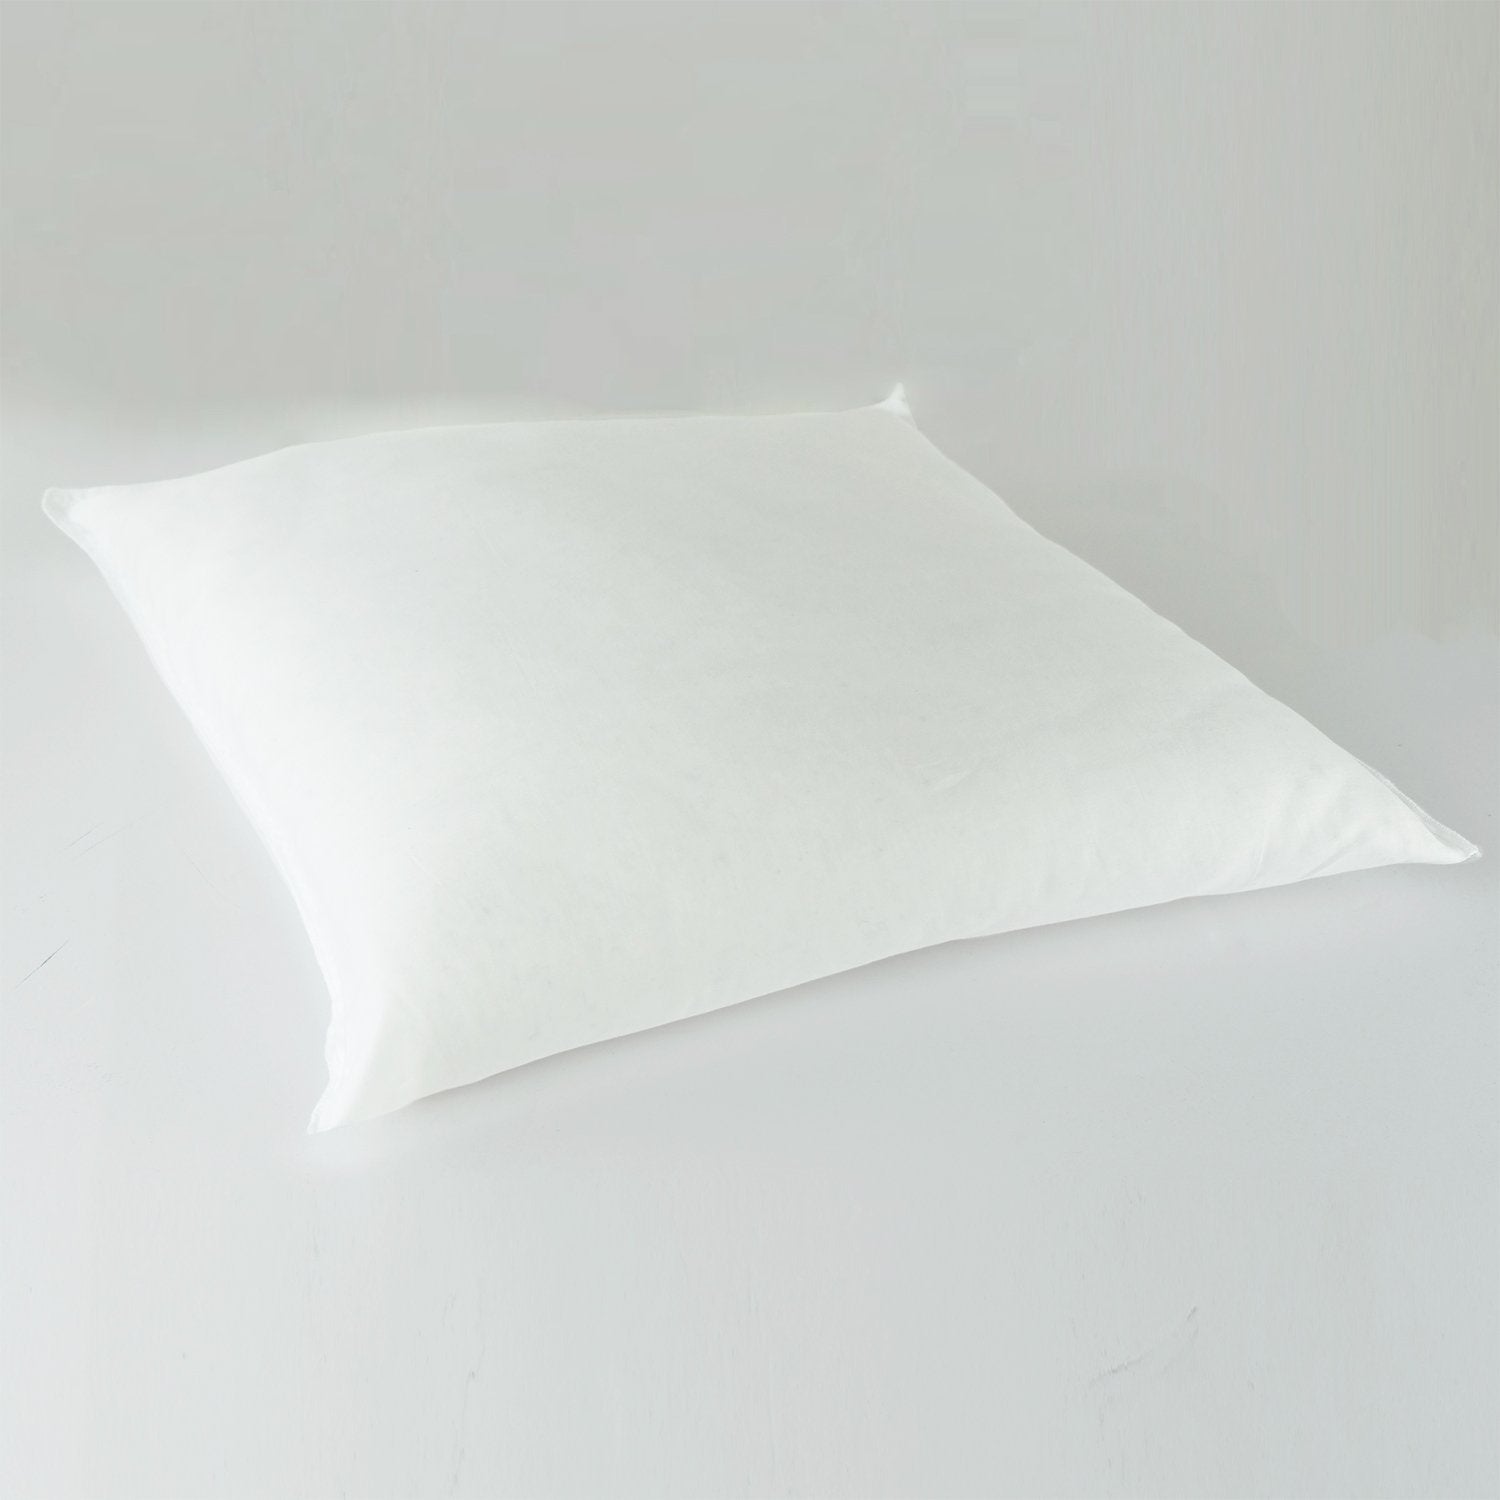 J-Life Saku Tan Zabuton Floor Pillow_Pillows & Shams